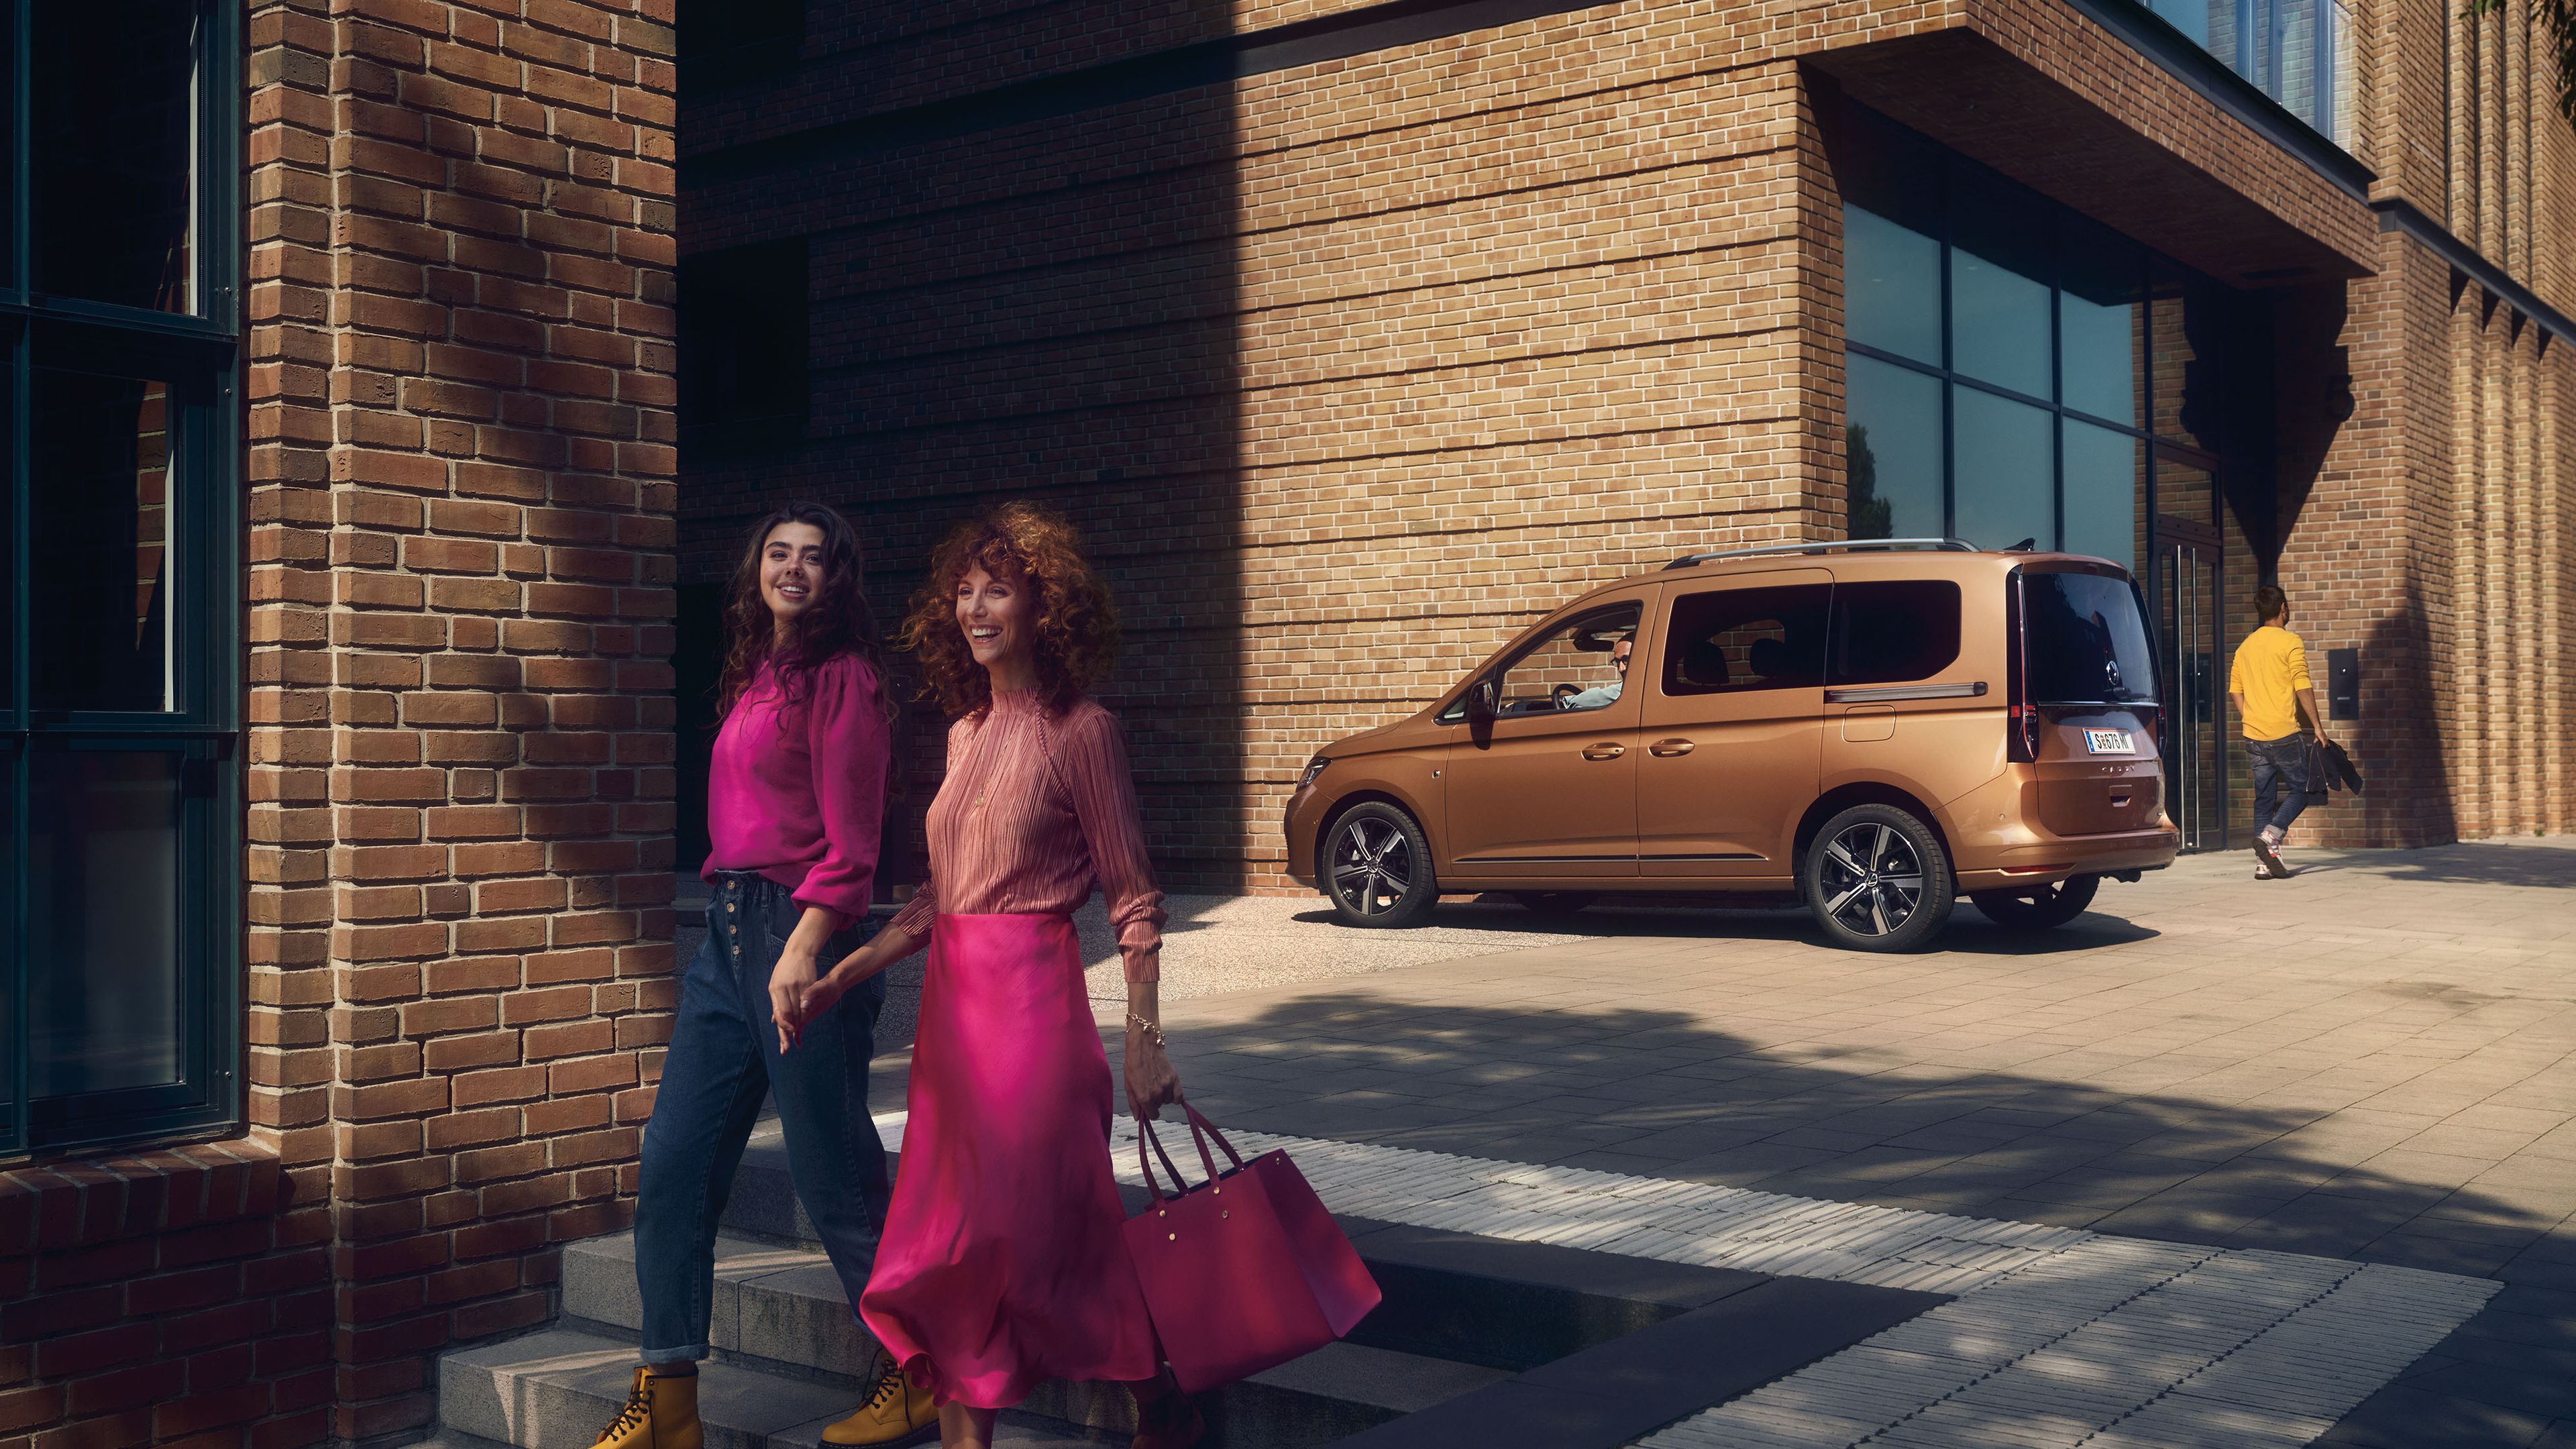 Die Mutter geht mit ihrer Tochter die Stiege hinunter, dahinter ist ein VW Caddy zu sehen.